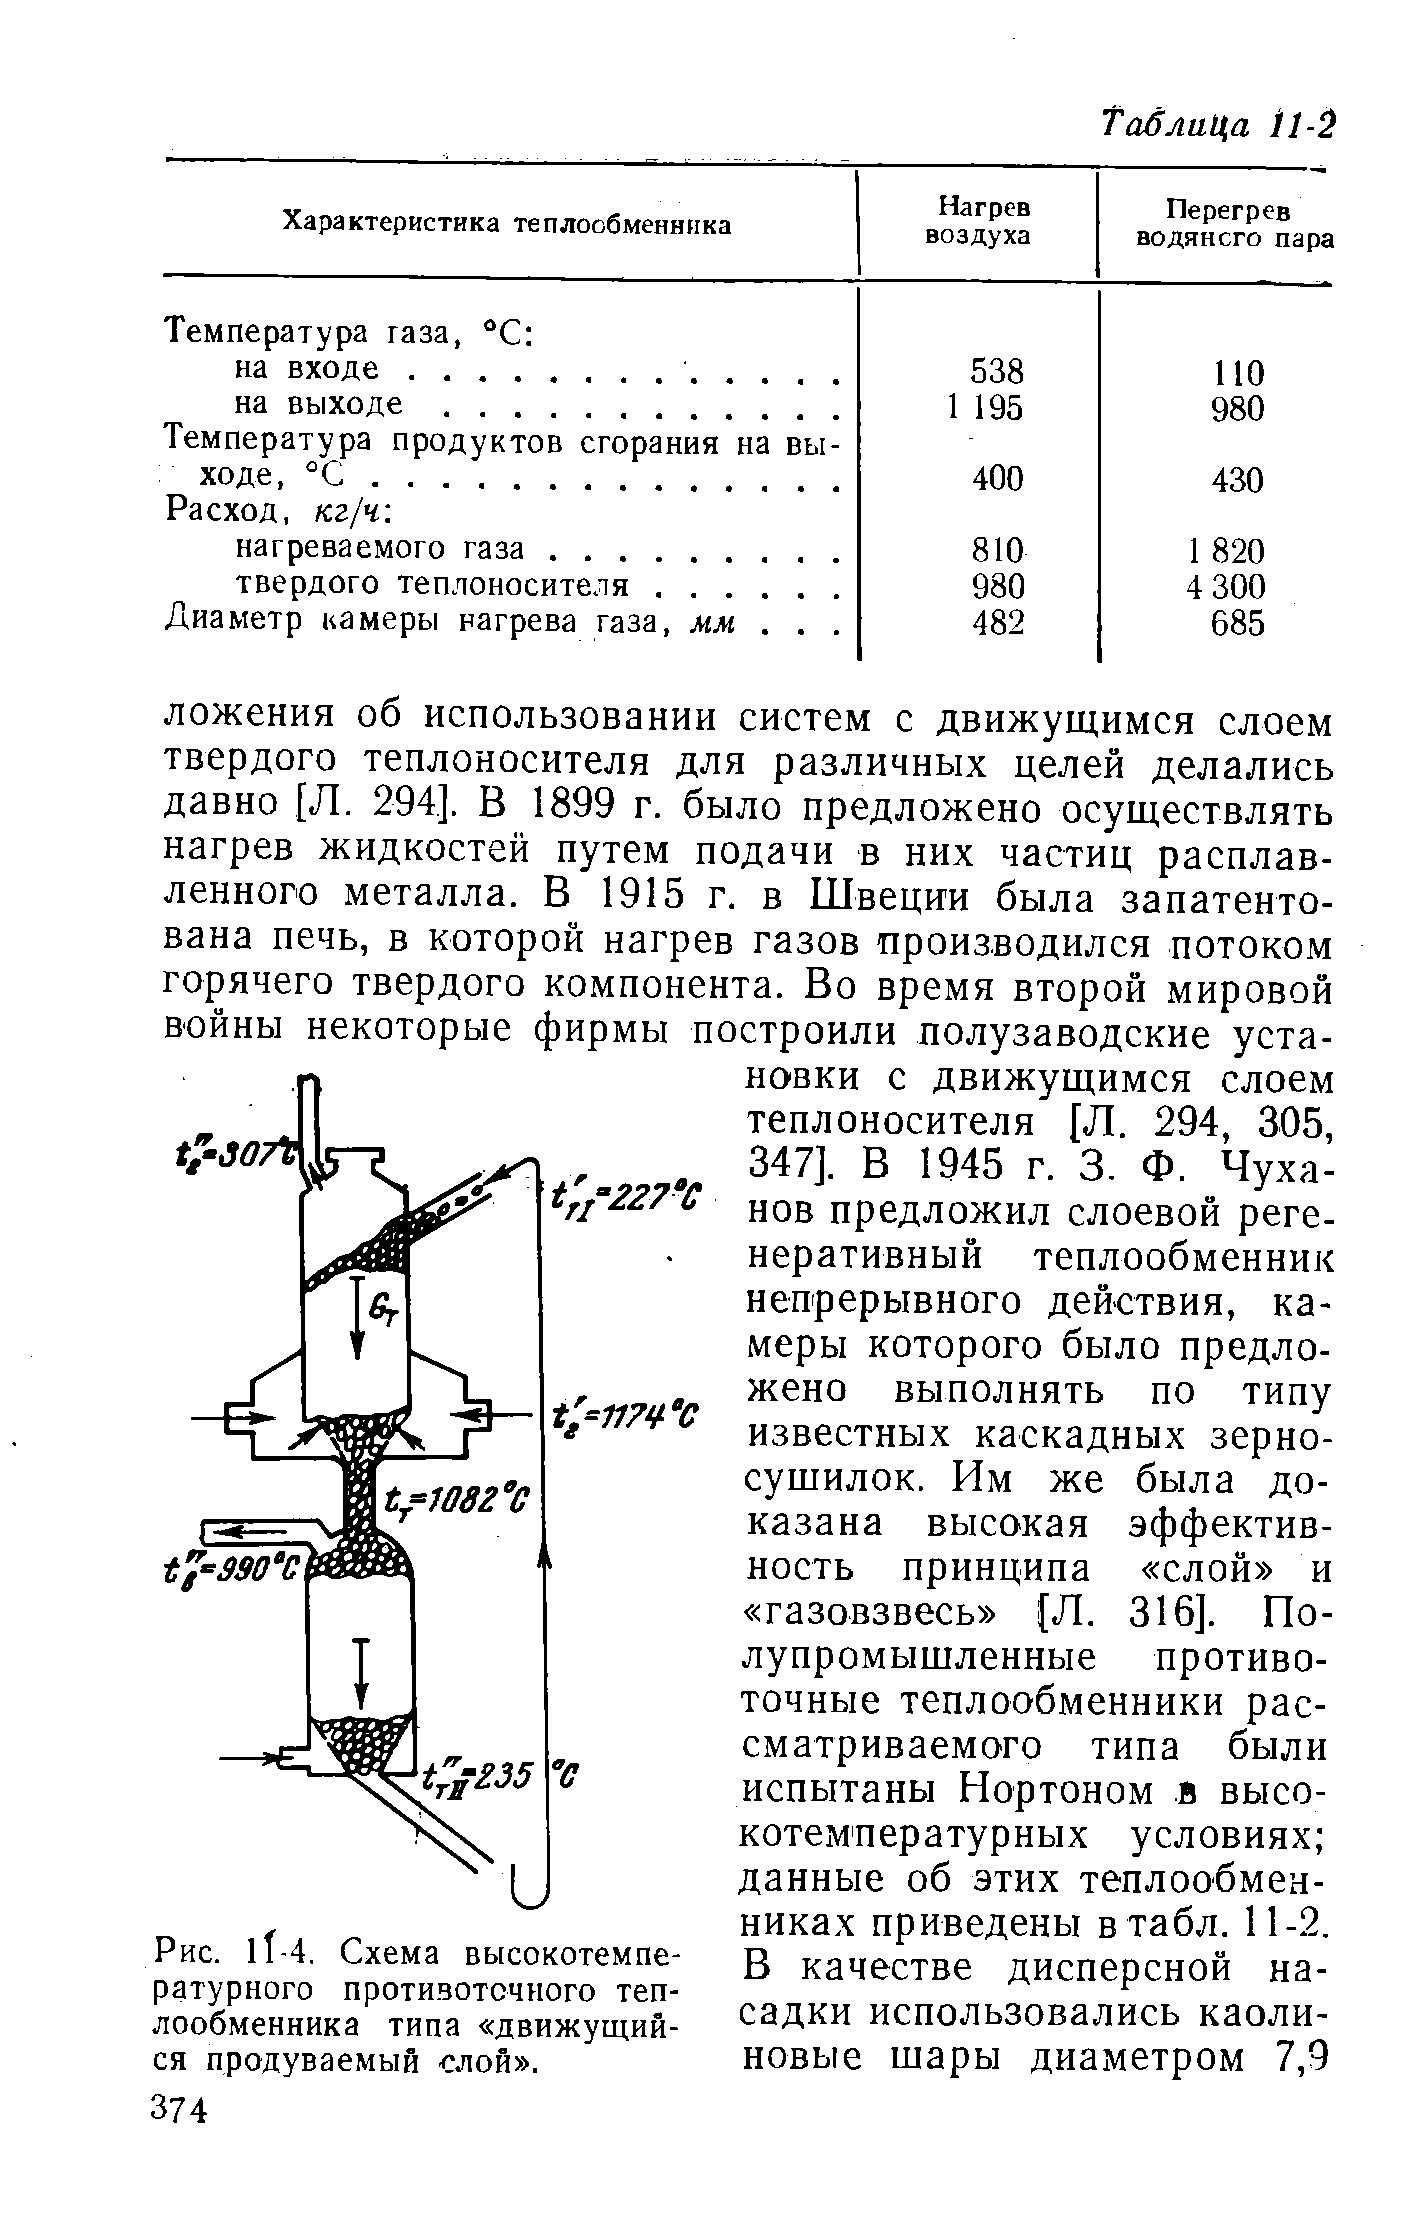 Рис. lT-4, Схема высокотемпературного протизоточного <a href="/info/489969">теплообменника типа</a> движущийся продуваемый слой .
